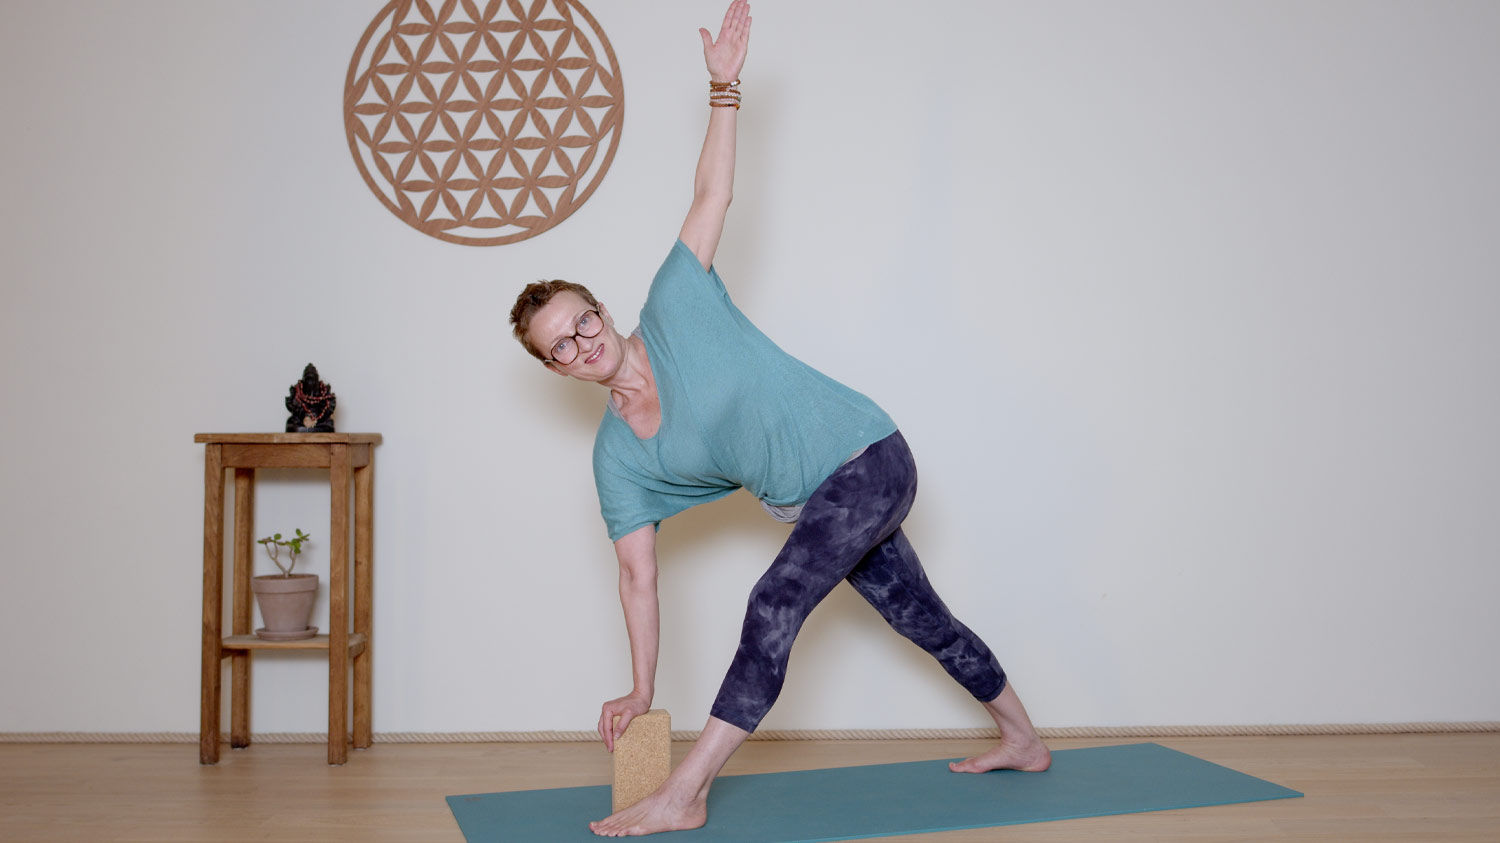 Séance complète - 45 min - Corps mental | Cours de yoga en ligne avec Delphine Denis | Hatha Yoga dynamique, Méditation, Pranayama